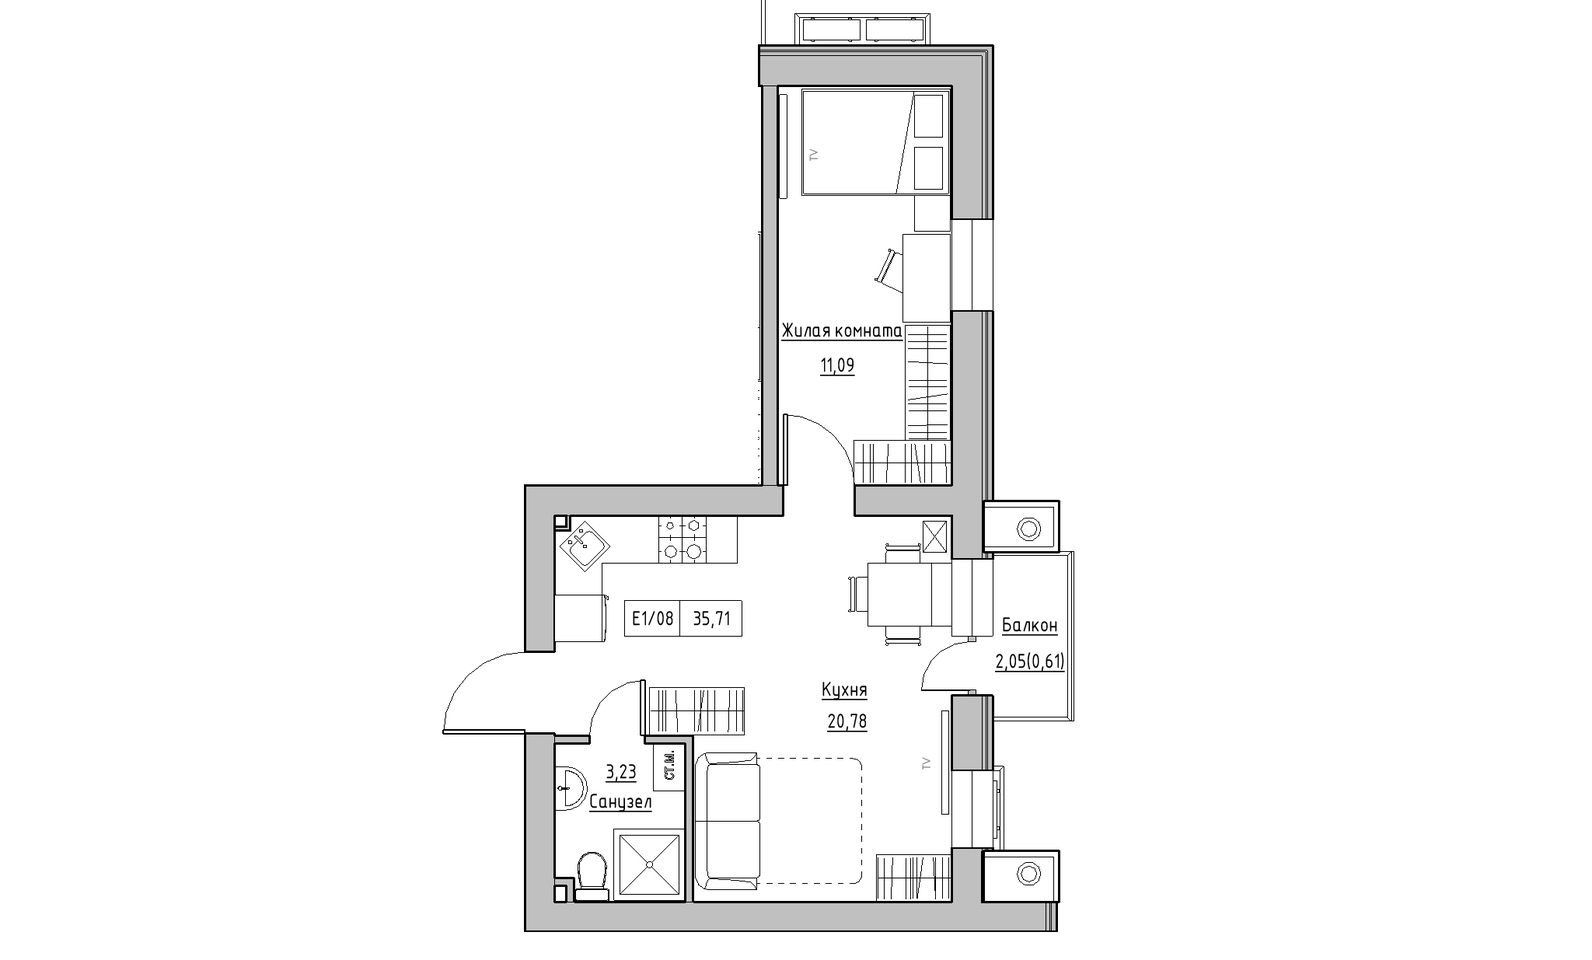 Планування 1-к квартира площею 35.71м2, KS-014-04/0009.